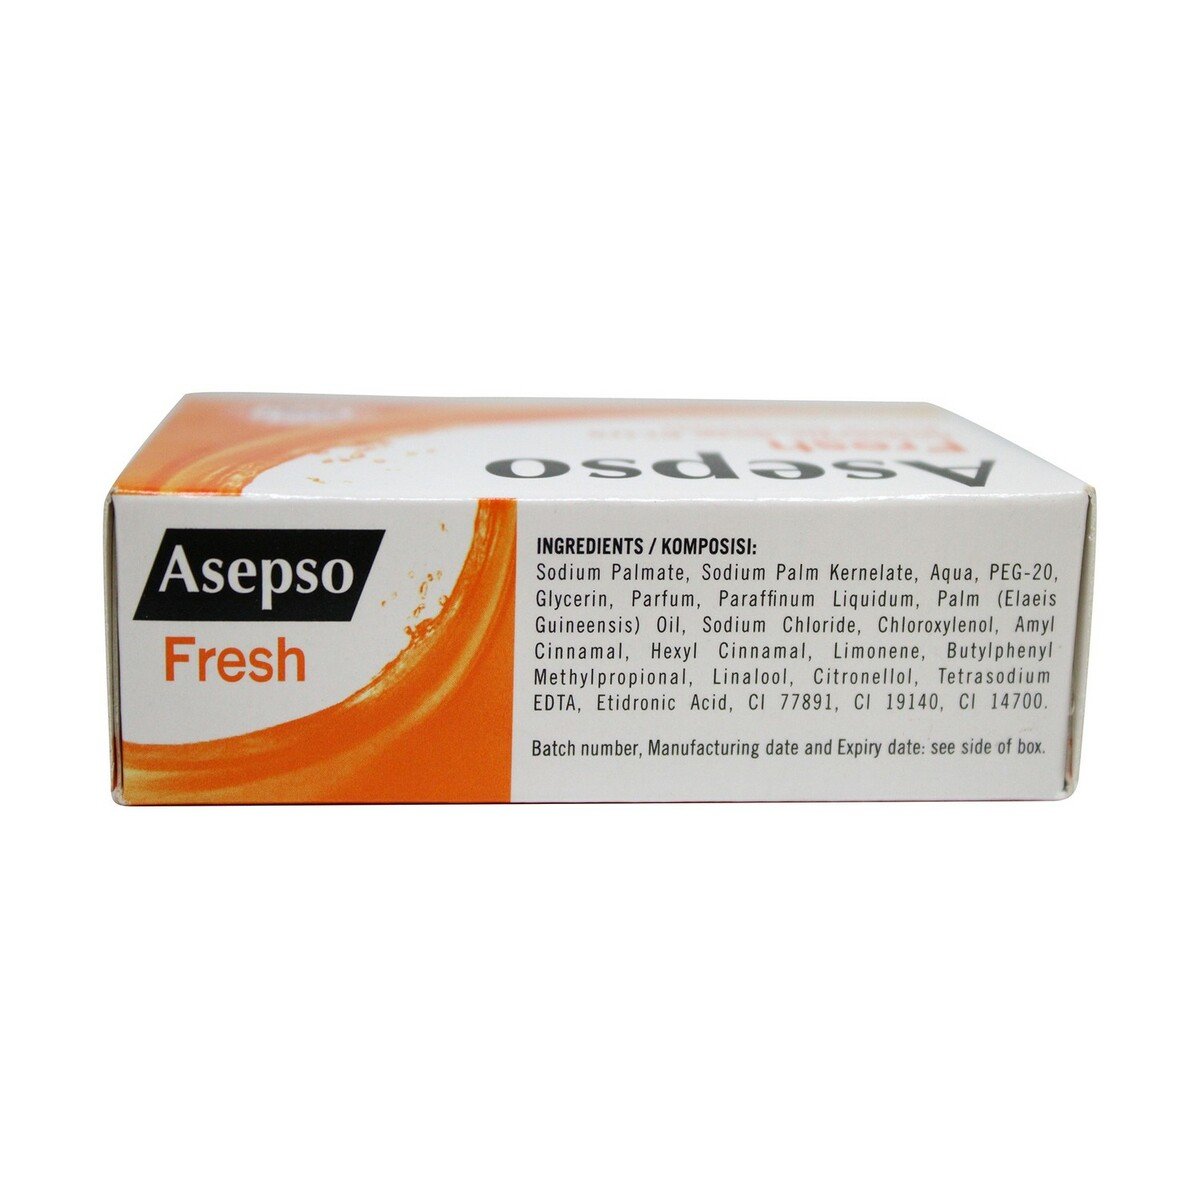 Asepso Bar Soap 80g